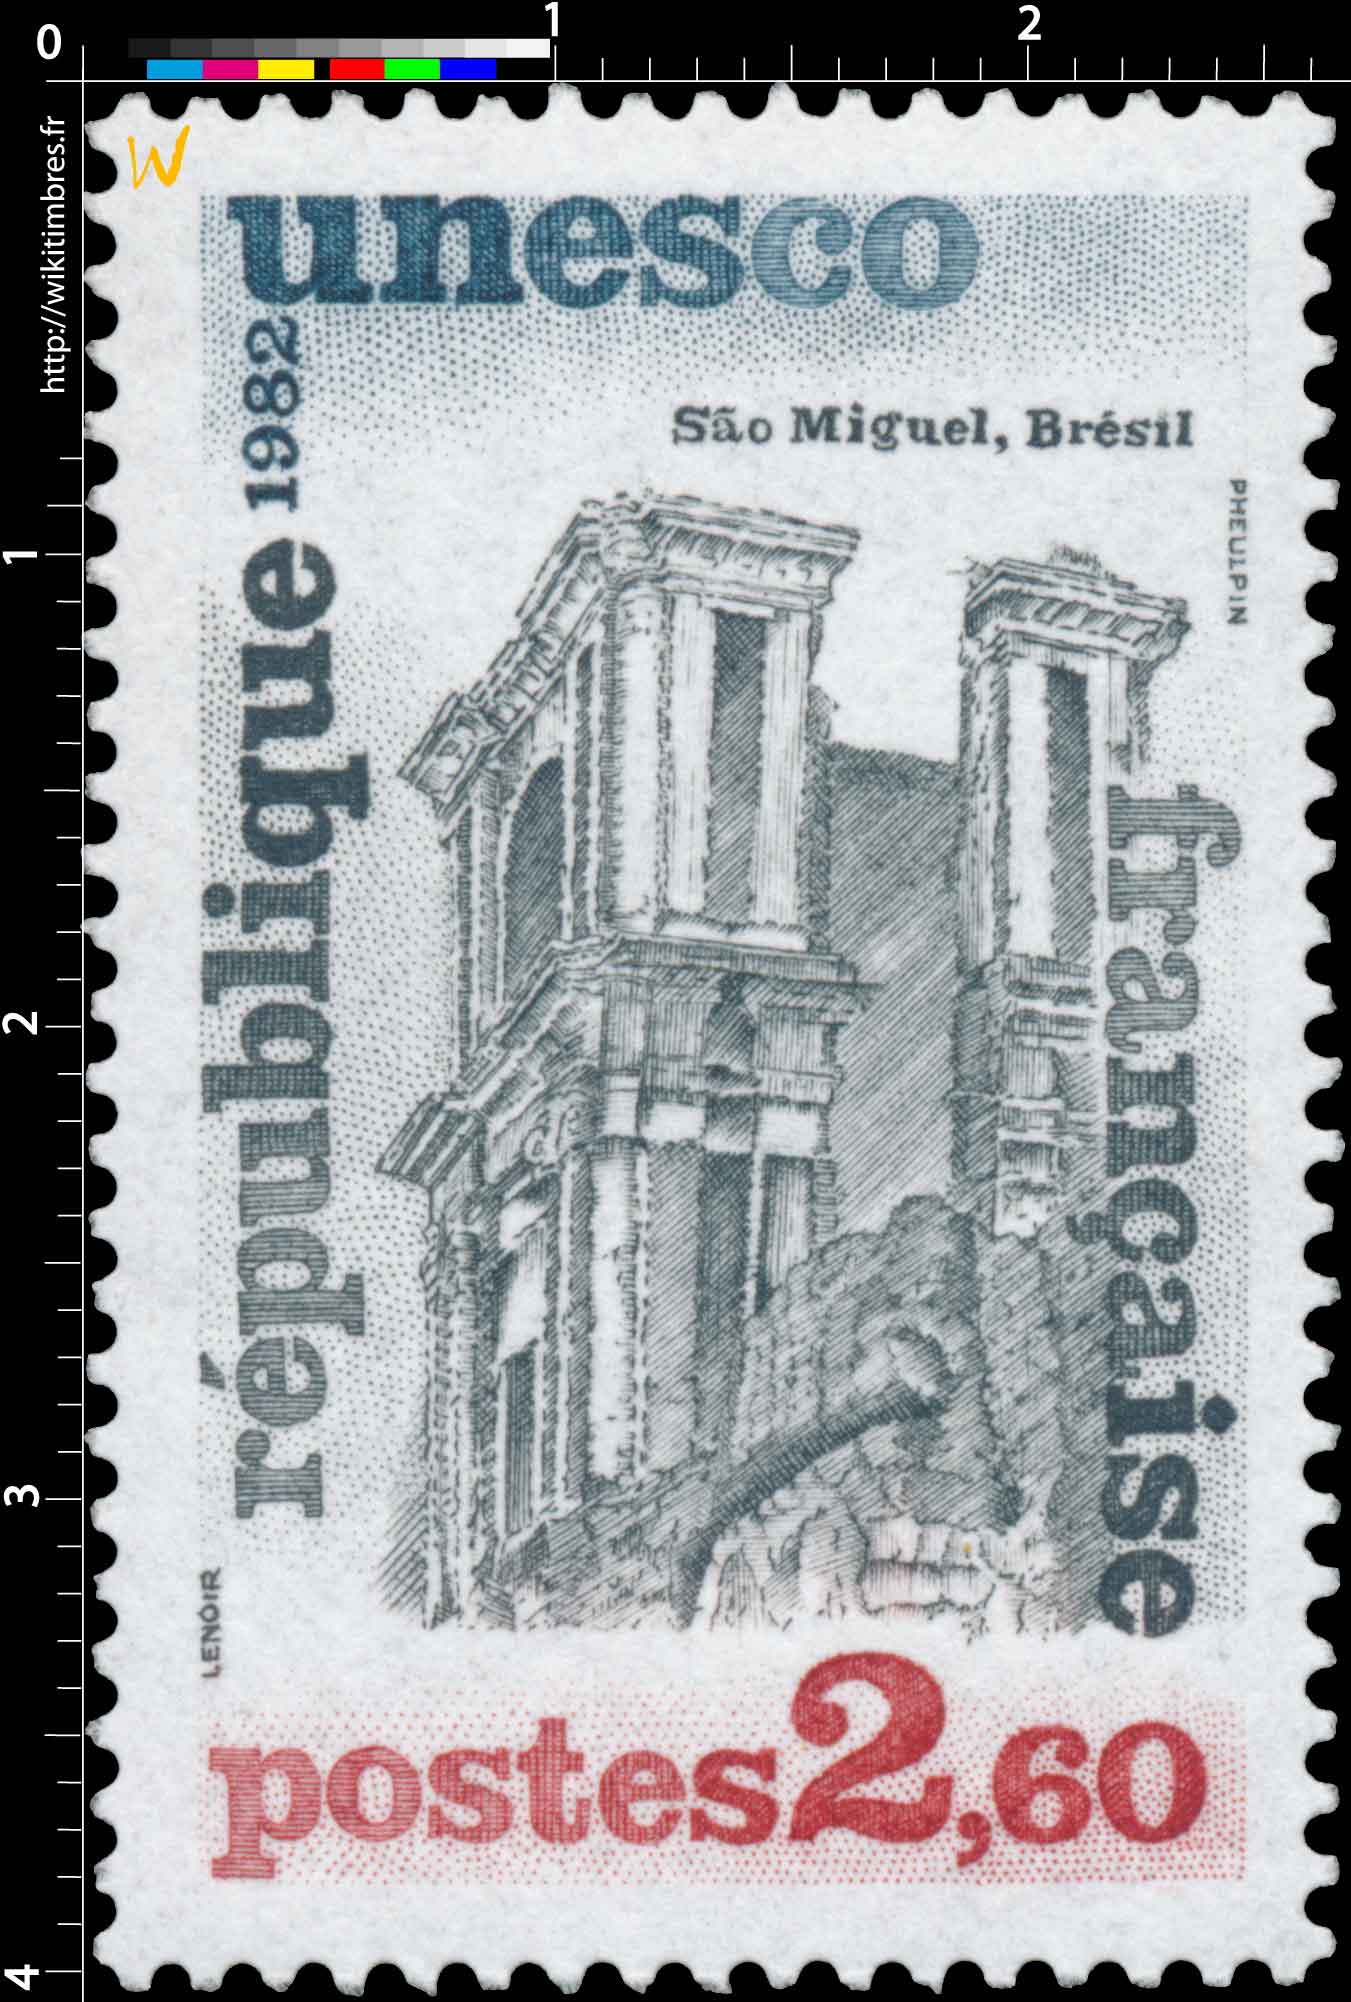 1982 Unesco Sâo Miguel, Brésil